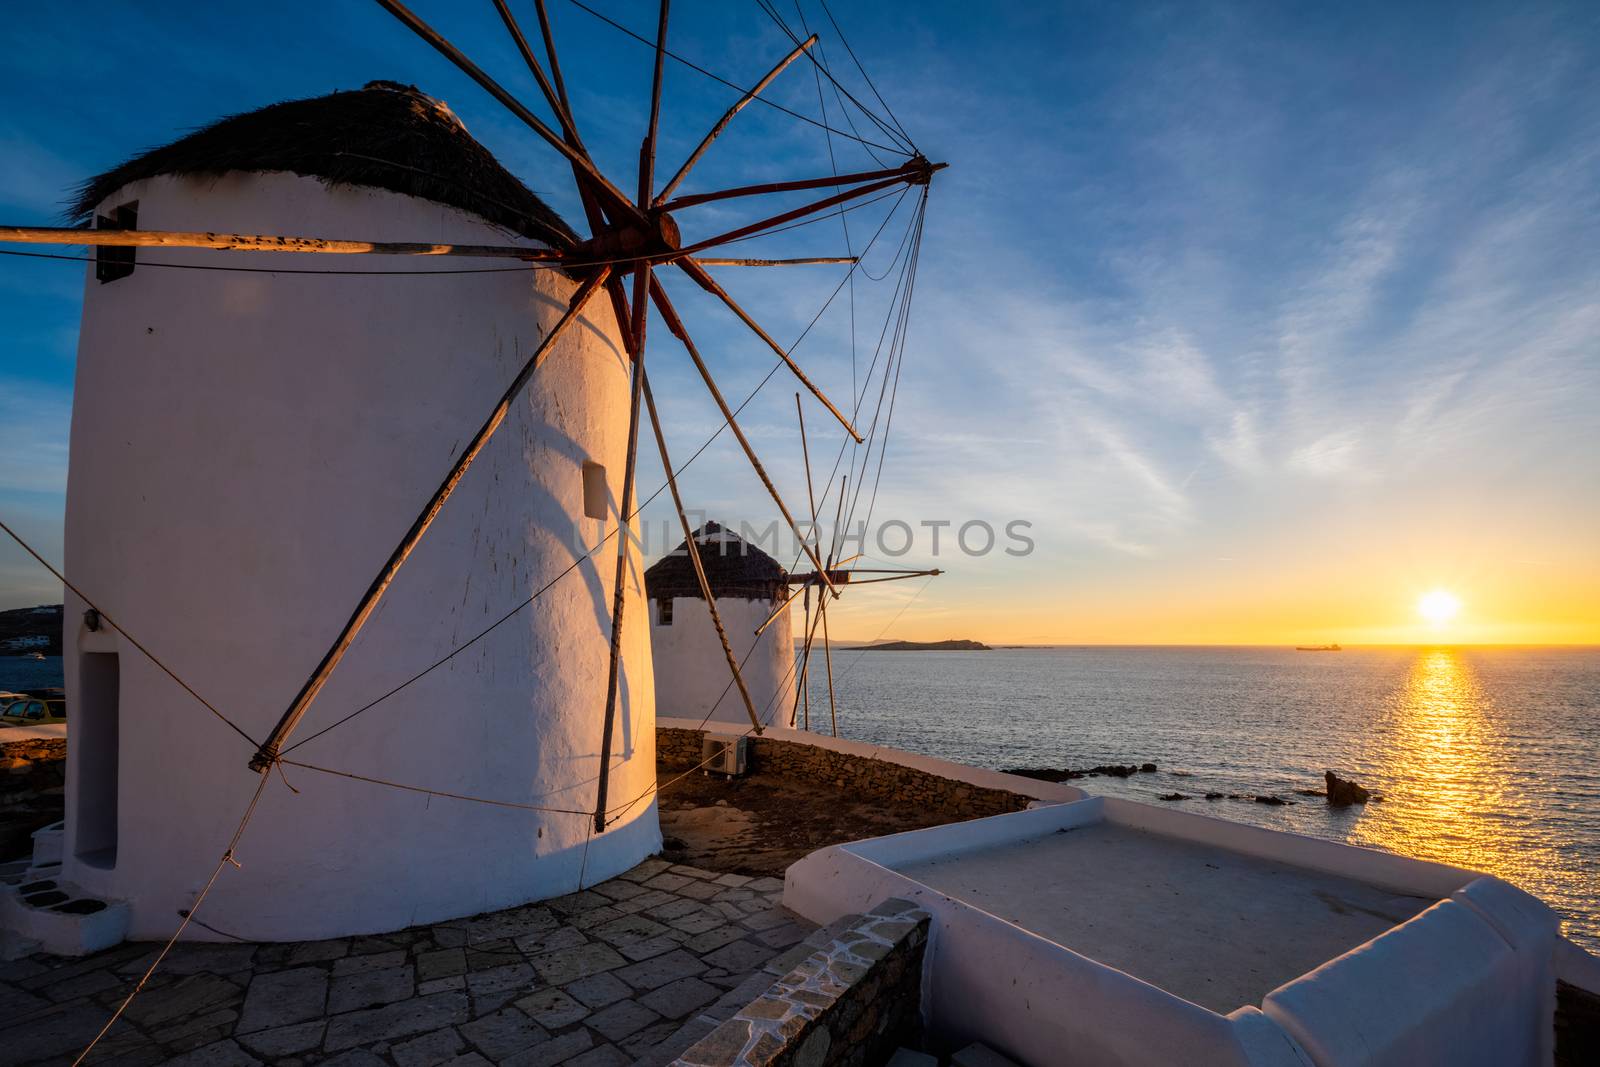 Traditional greek windmills on Mykonos island at sunrise, Cyclades, Greece by dimol